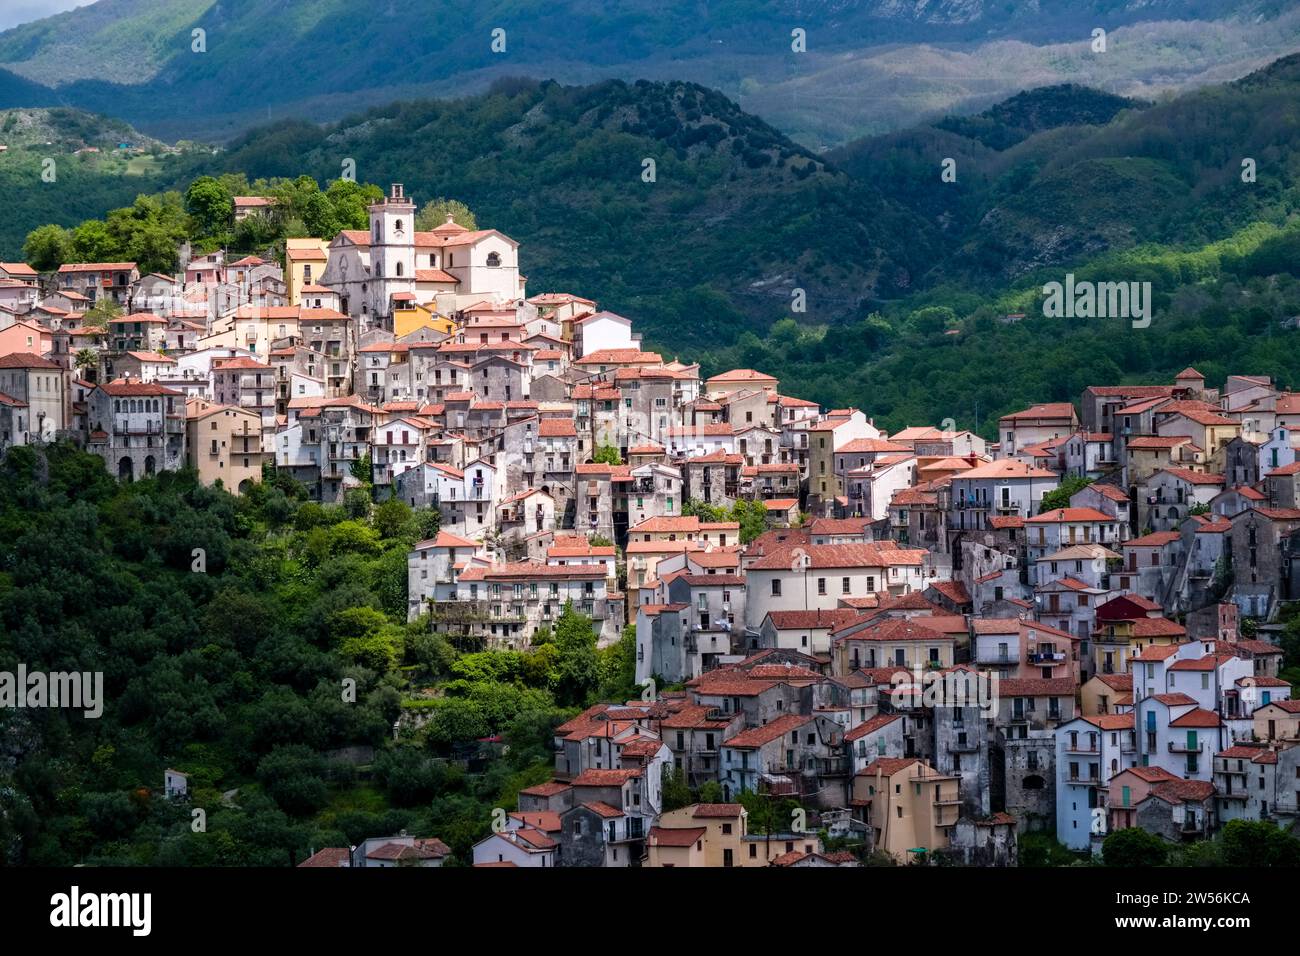 Die kleine Stadt Rivello mit der Kirche Santa Maria del Poggio liegt malerisch auf dem Gipfel einer bewaldeten Hügellandschaft. Stockfoto